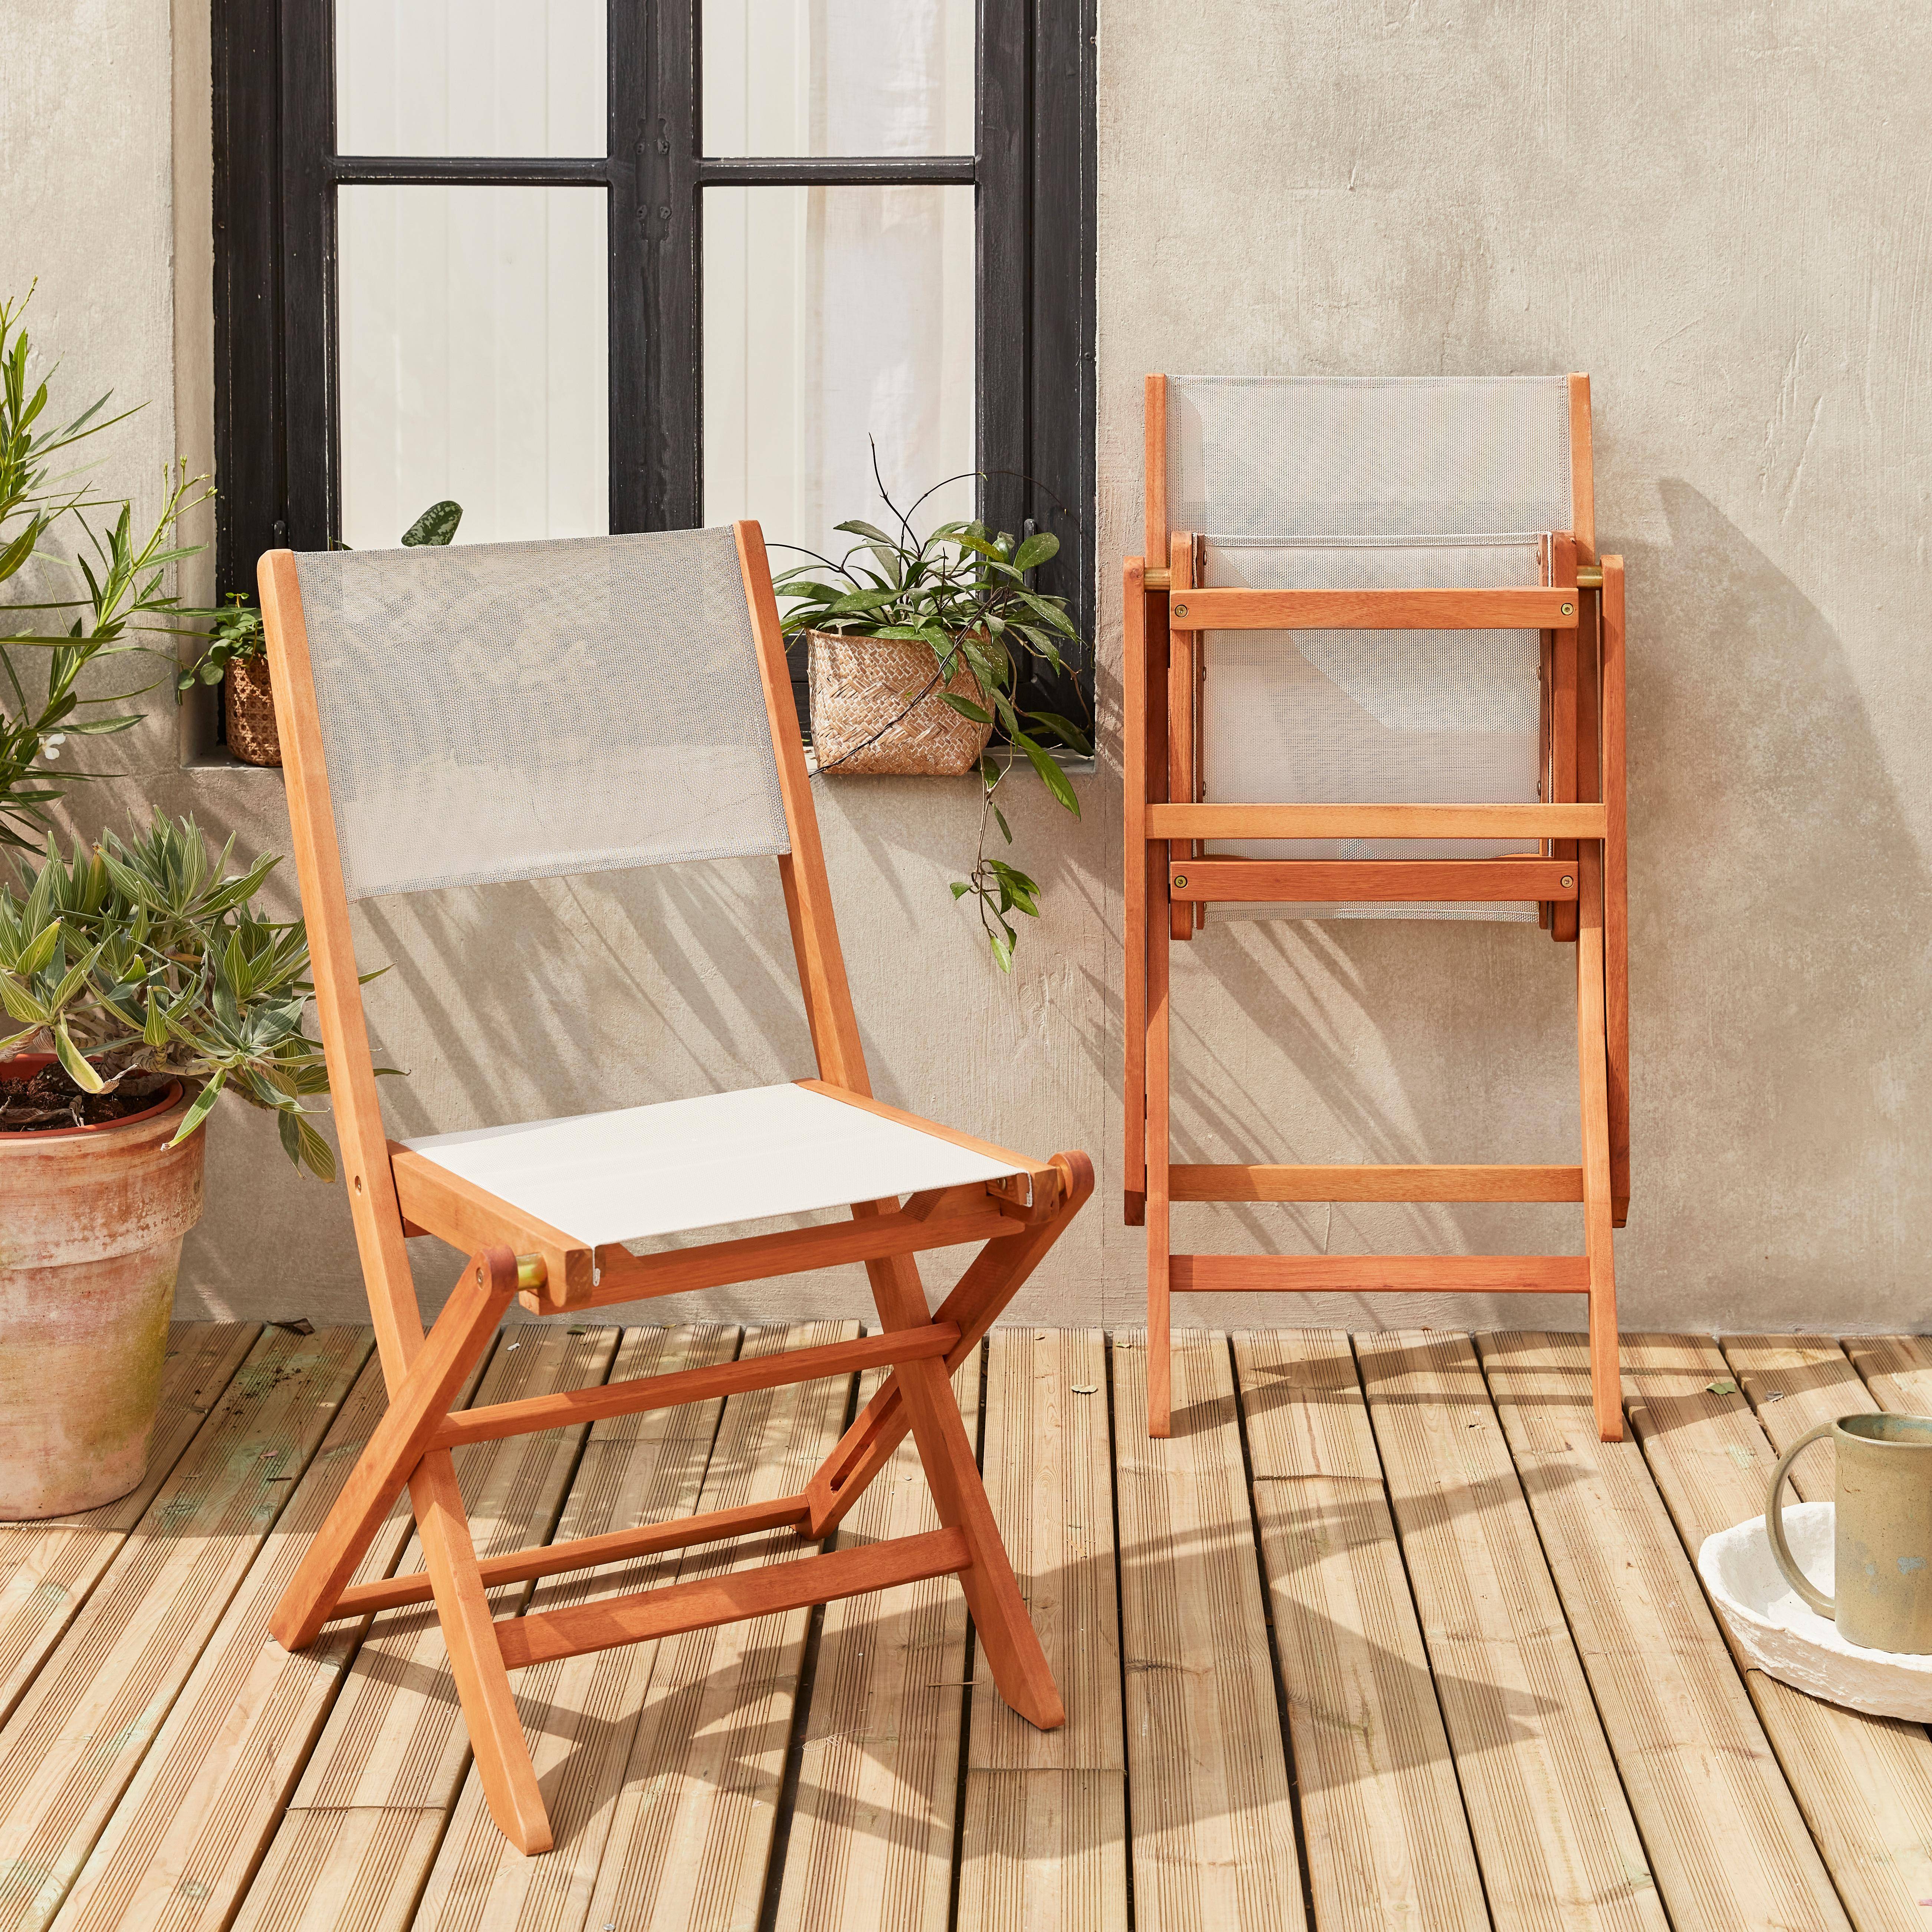 Sedie da giardino, in legno e textilene - modello: Almeria, colore: Bianco - 2 sedie pieghevoli in legno di eucalipto FSC oliato e textilene Photo2